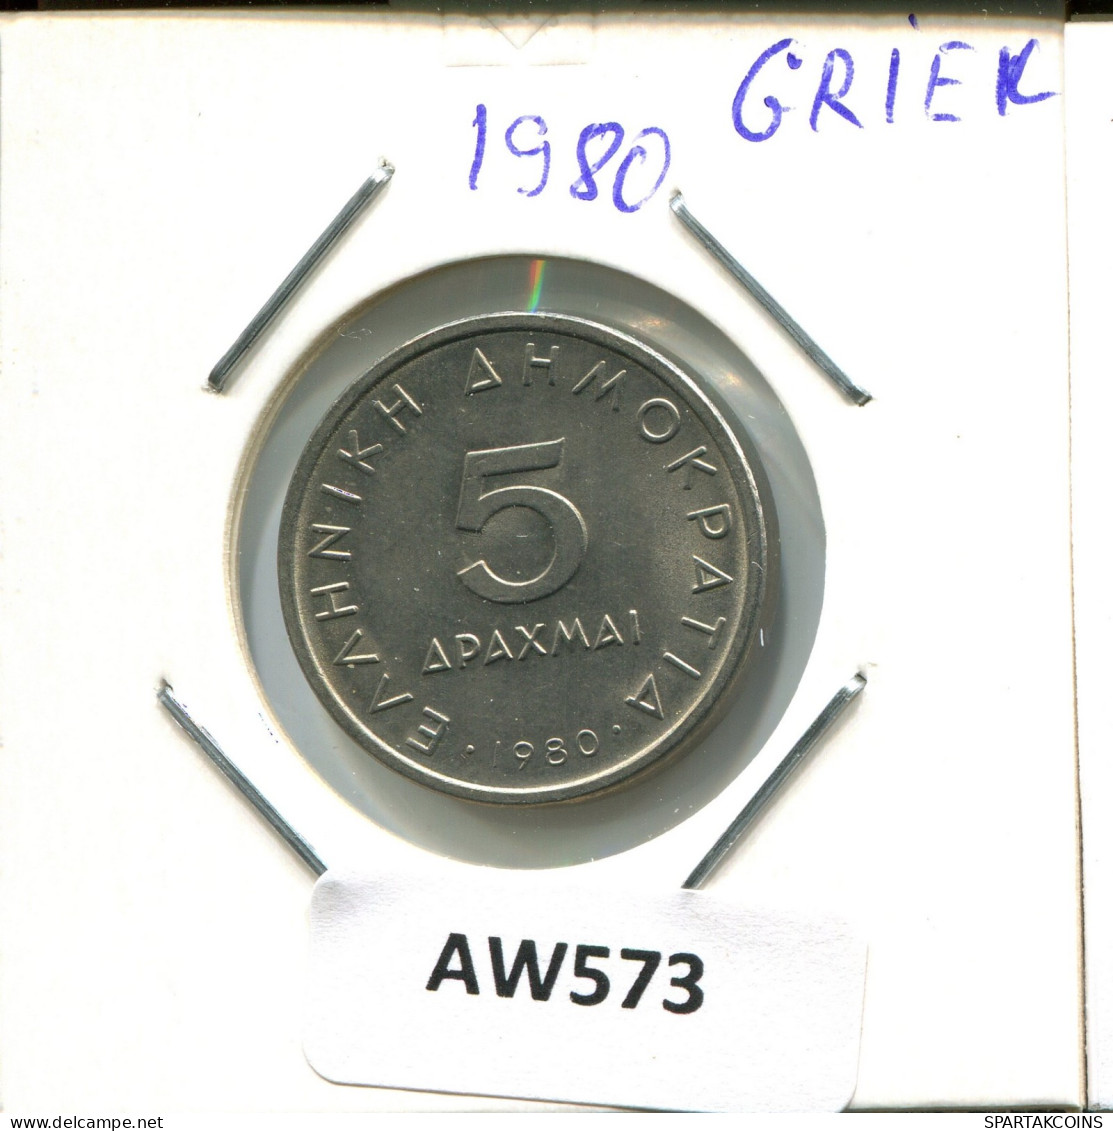 5 DRACHMES 1980 GRIECHENLAND GREECE Münze #AW573.D.A - Griekenland